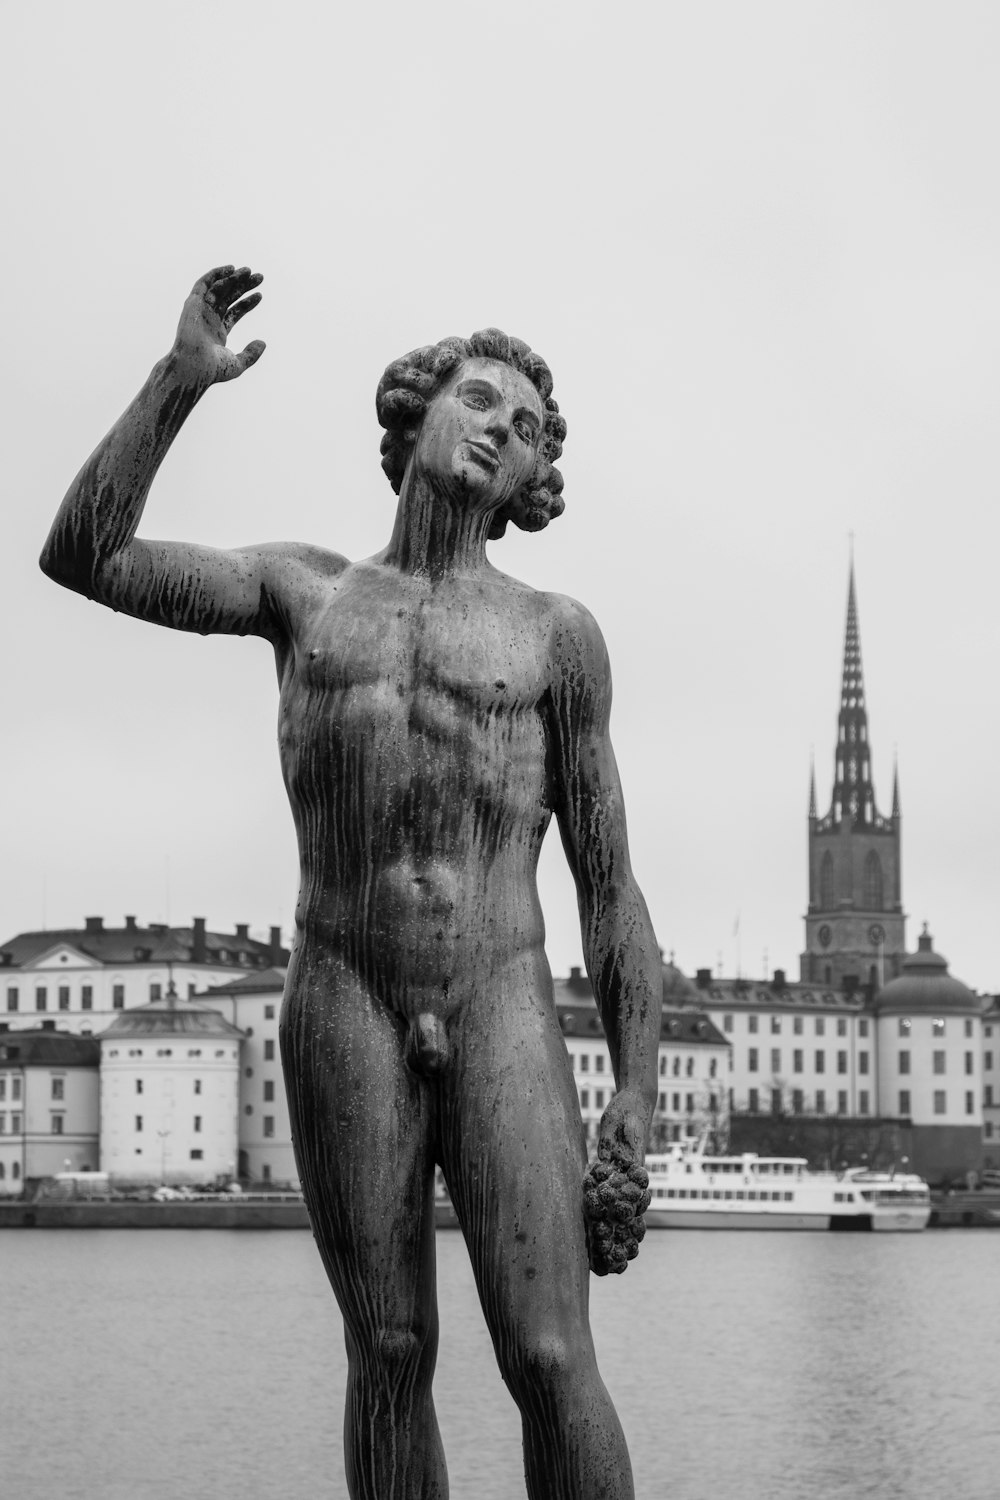 fotografia in scala di grigi della statua dell'uomo in topless